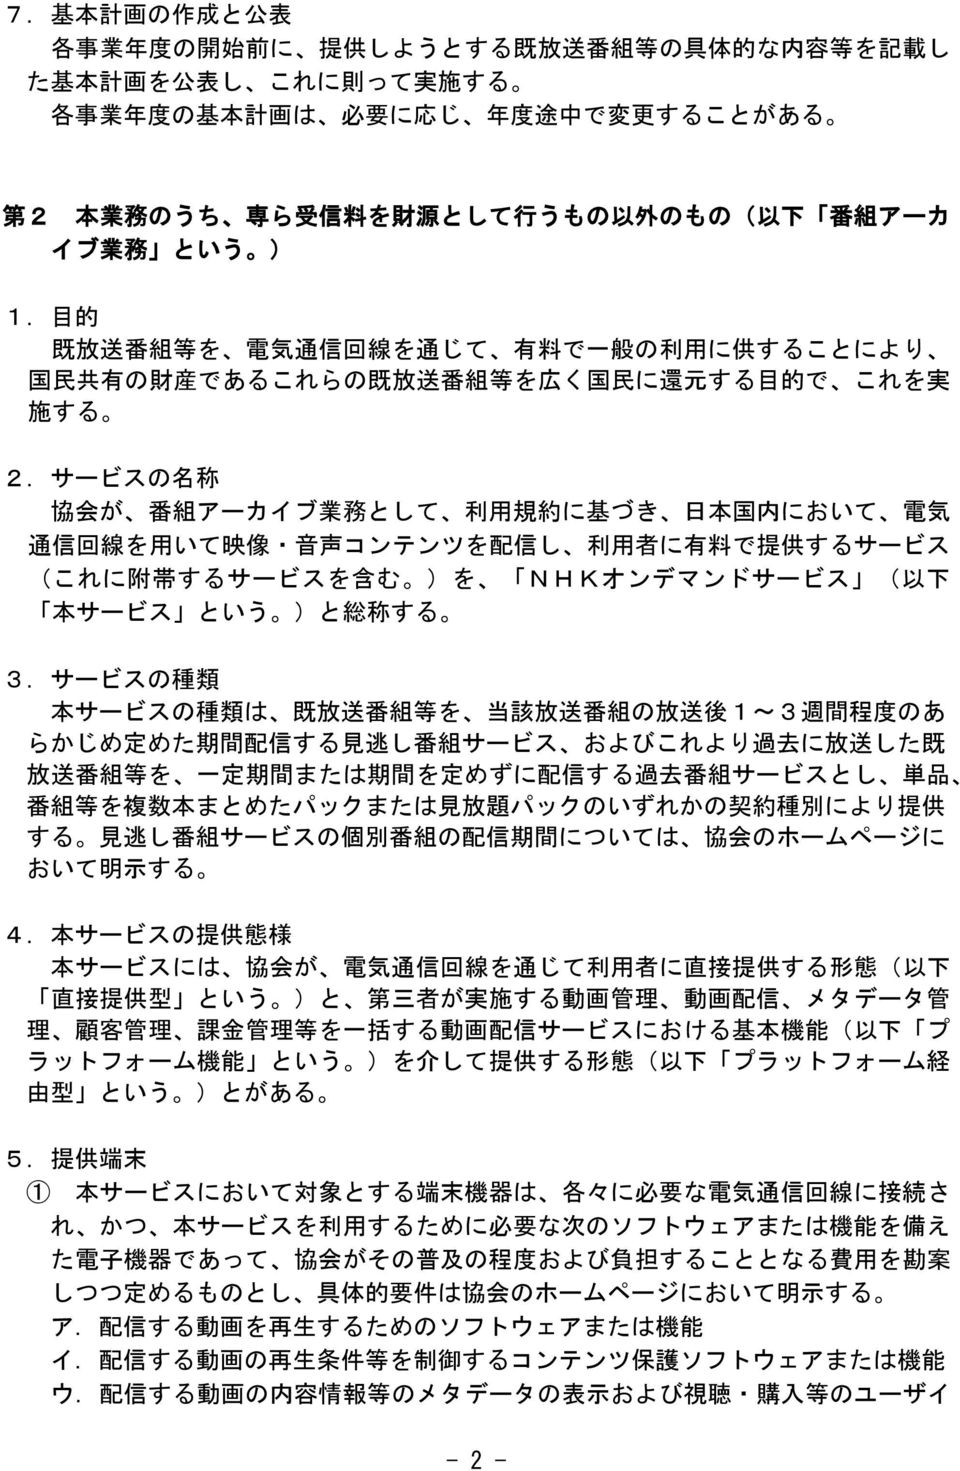 サービスの 名 称 協 会 が 番 組 アーカイブ 業 務 として 利 用 規 約 に 基 づき 日 本 国 内 において 電 気 通 信 回 線 を 用 いて 映 像 音 声 コンテンツを 配 信 し 利 用 者 に 有 料 で 提 供 するサービス (これに 附 帯 するサービスを 含 む )を NHKオンデマンドサービス ( 以 下 本 サービス という )と 総 称 する 3.